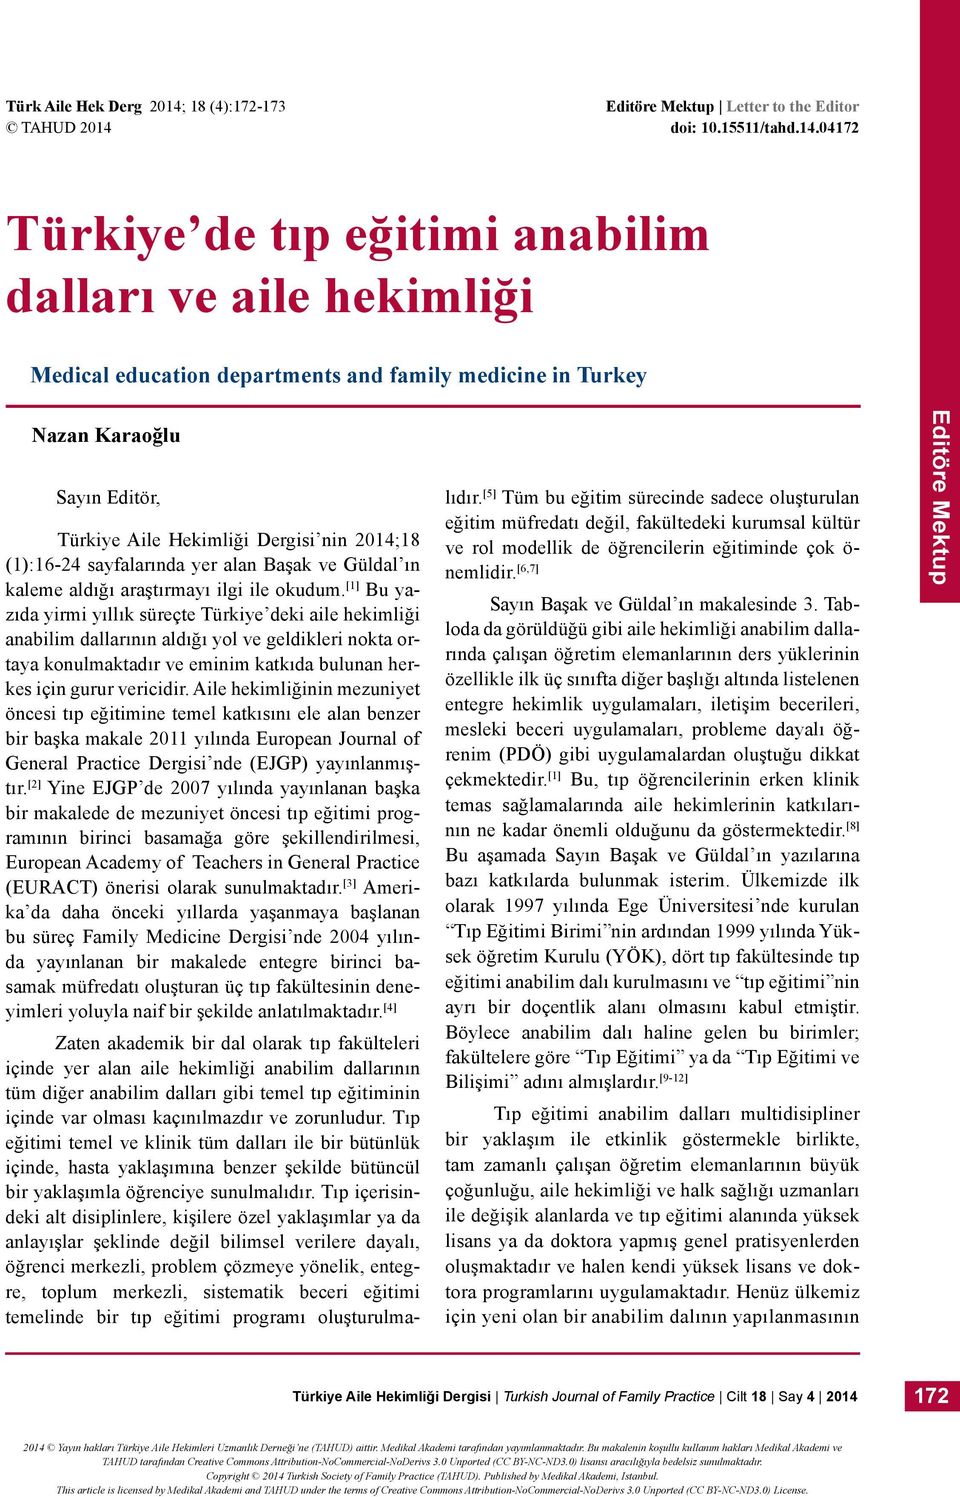 Nazan Karaoğlu Sayın Editör, Türkiye Aile Hekimliği Dergisi nin 204;8 ():6-24 sayfalarında yer alan Başak ve Güldal ın kaleme aldığı araştırmayı ilgi ile okudum.